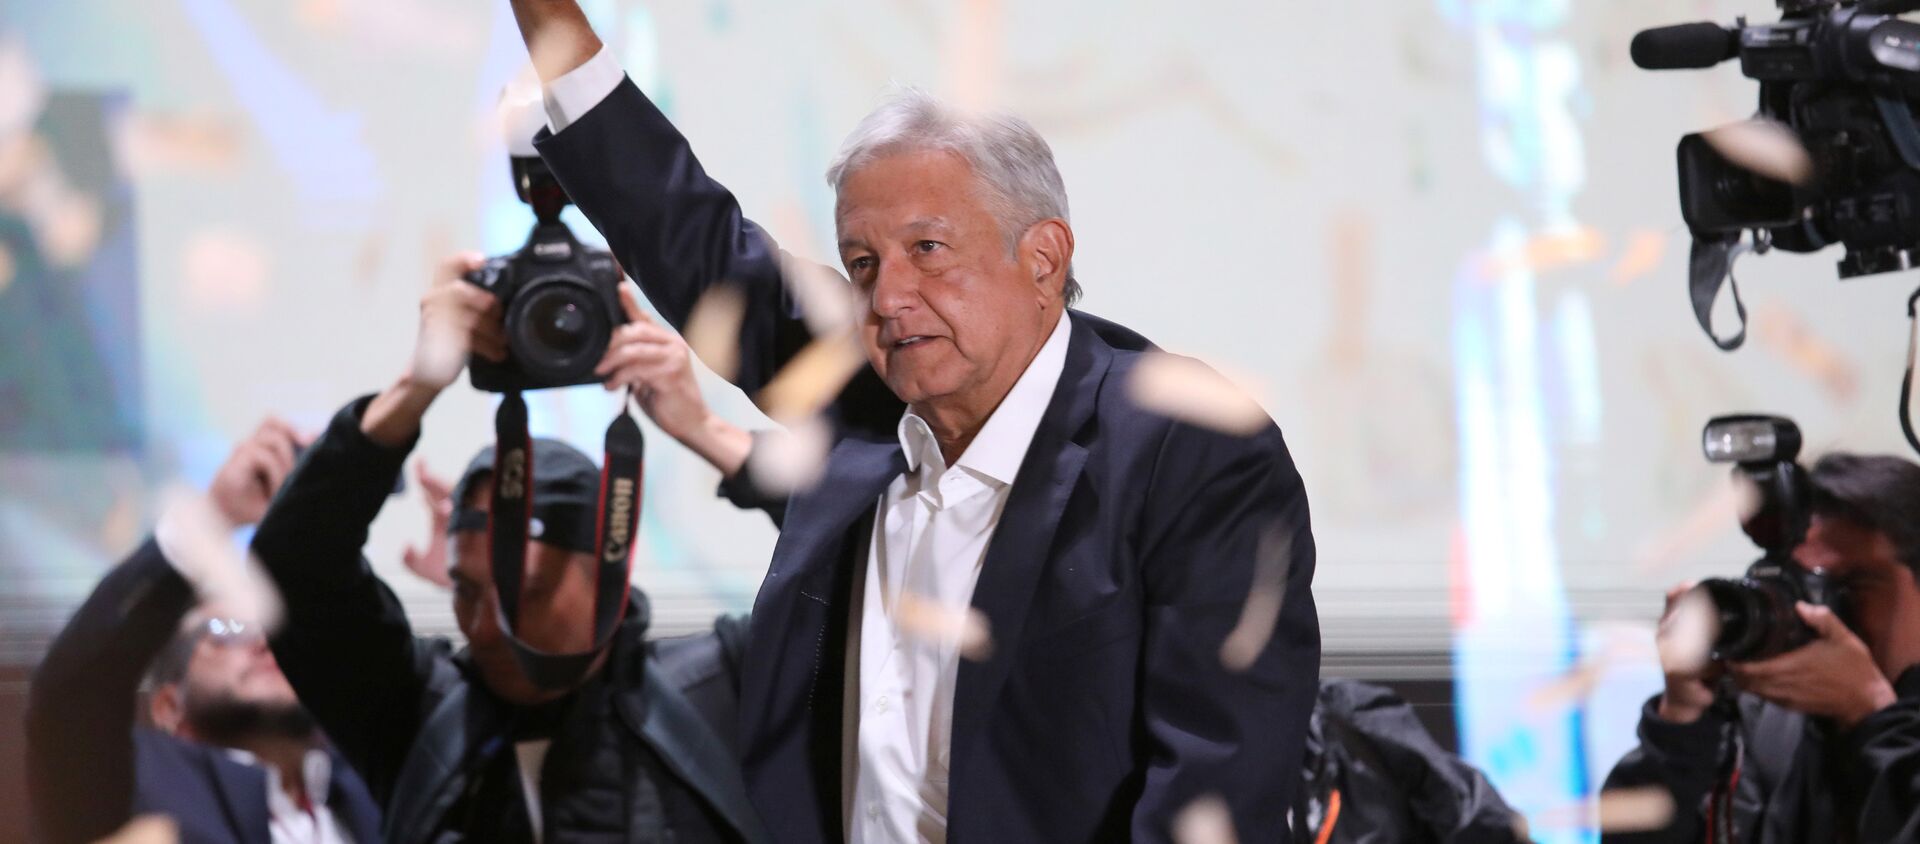 Andrés Manuel López Obrador - Sputnik Afrique, 1920, 06.07.2018